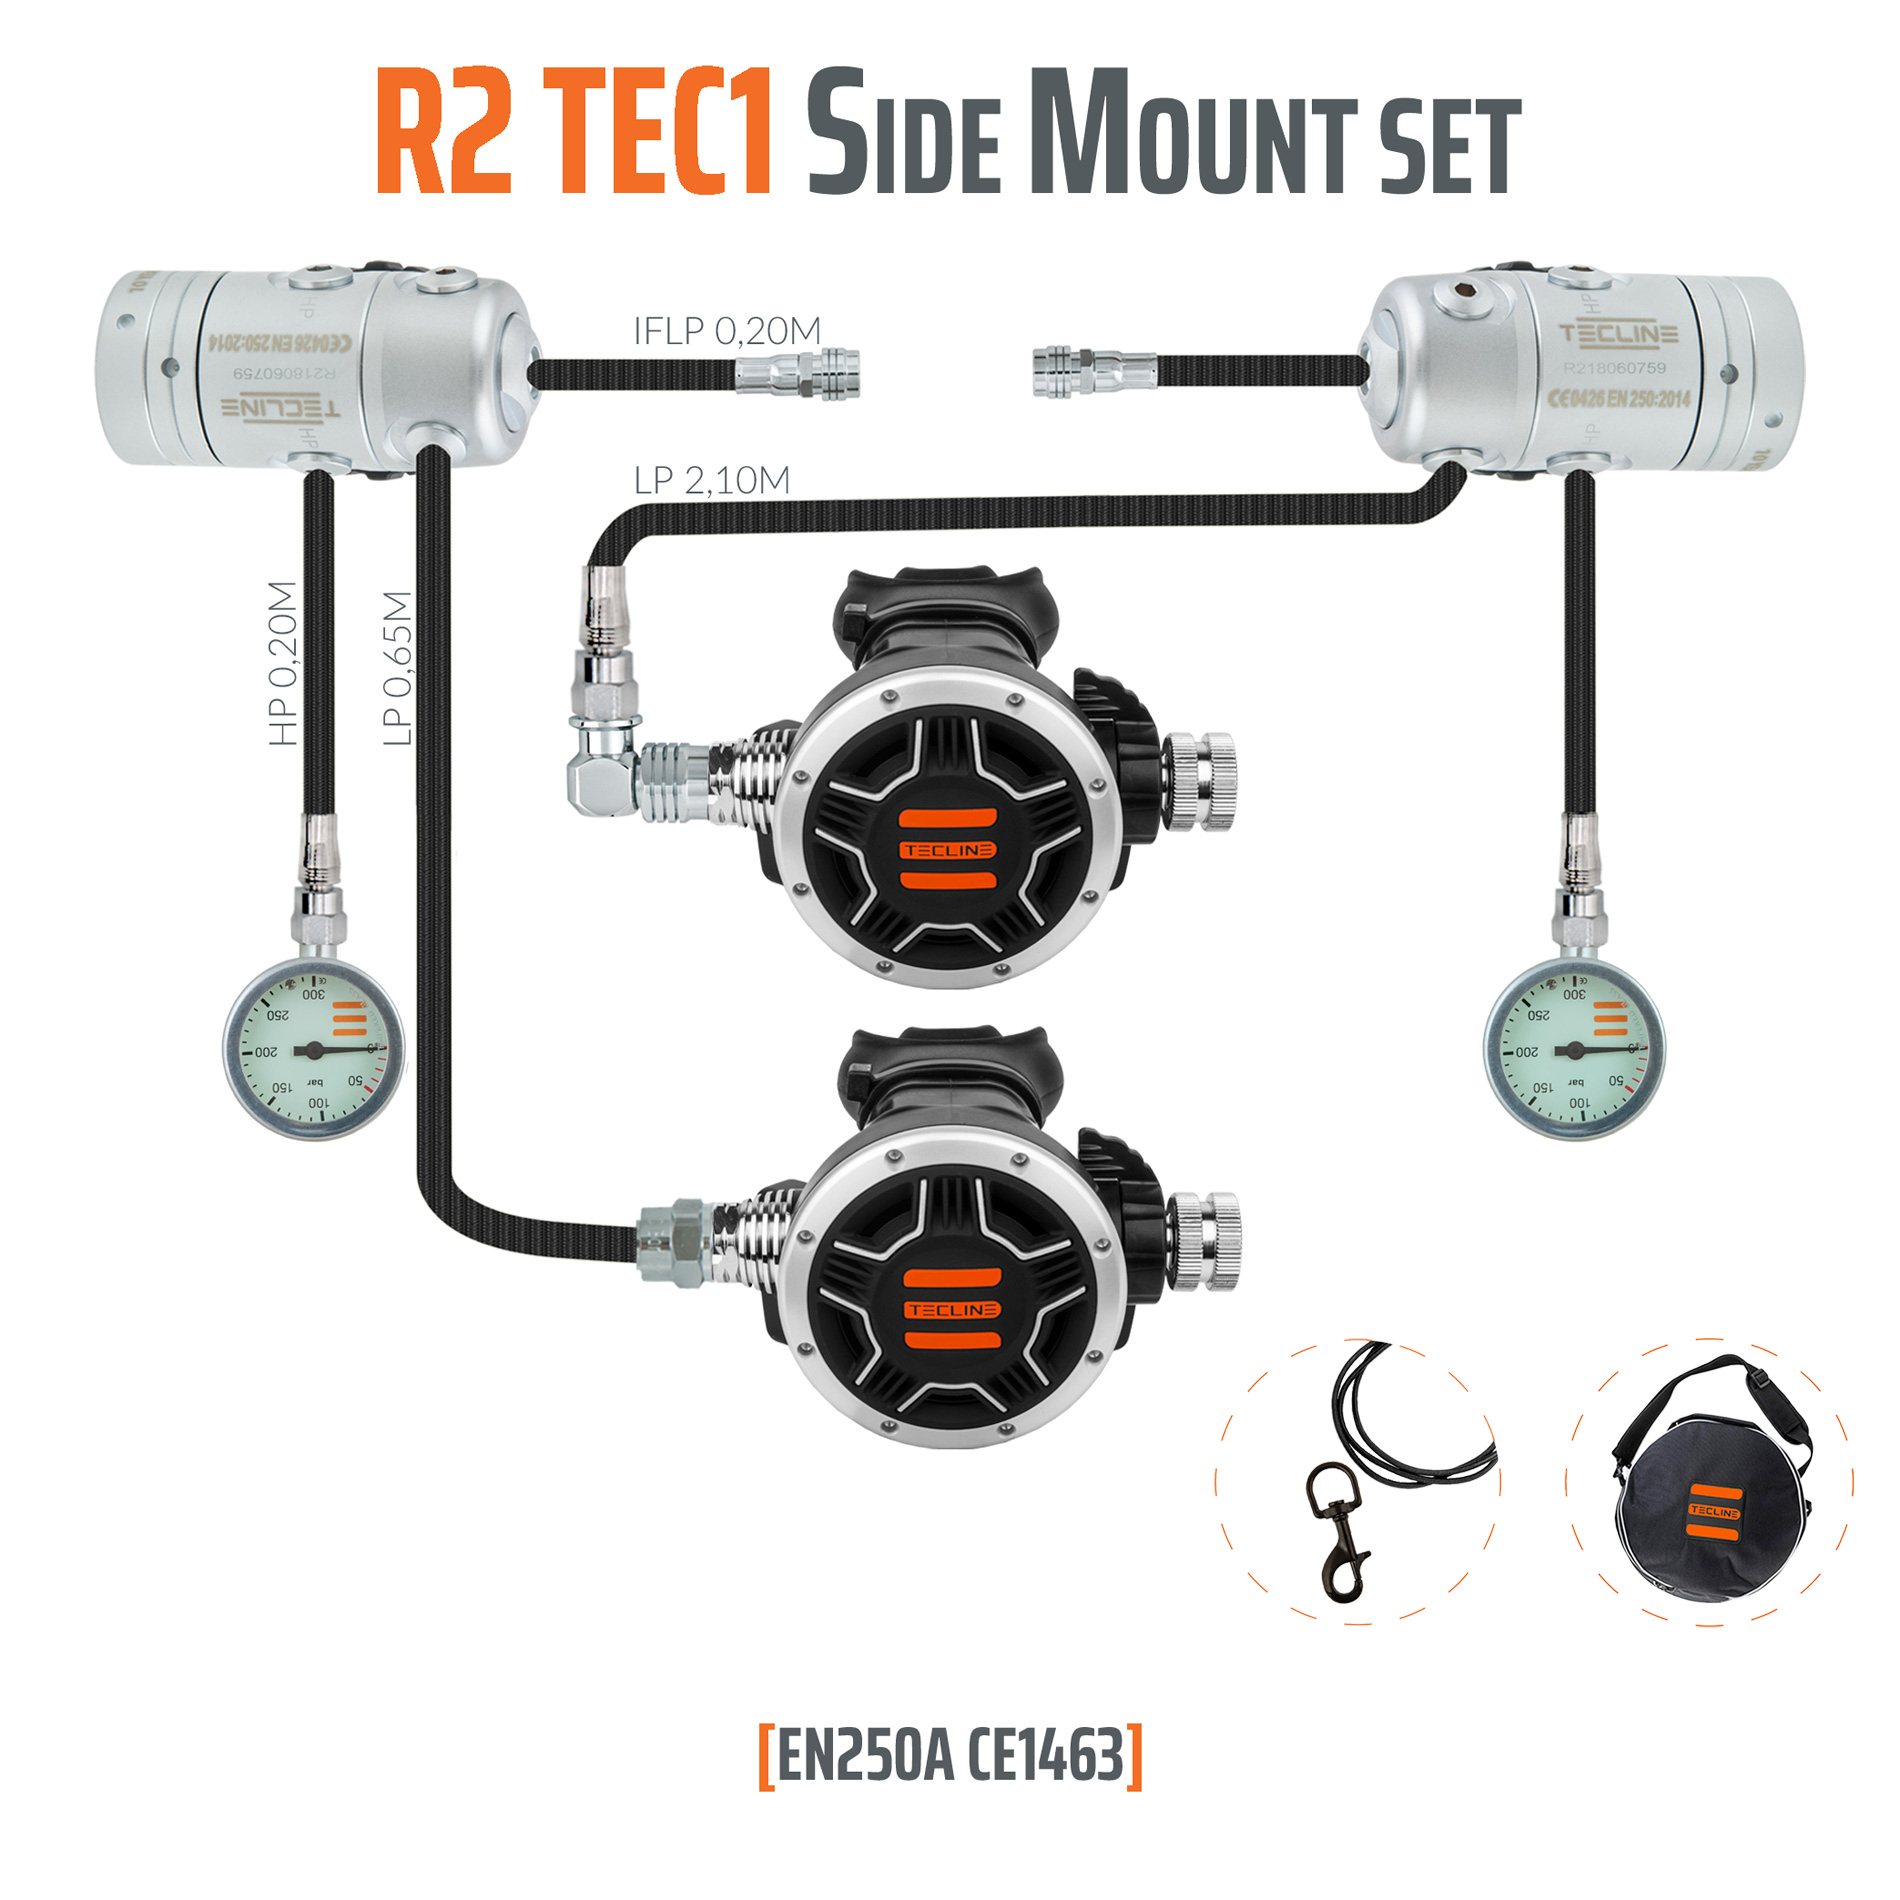 TECLINE REGULATOR R2 TEC2 SIDE MOUNT SET - EN250A 2